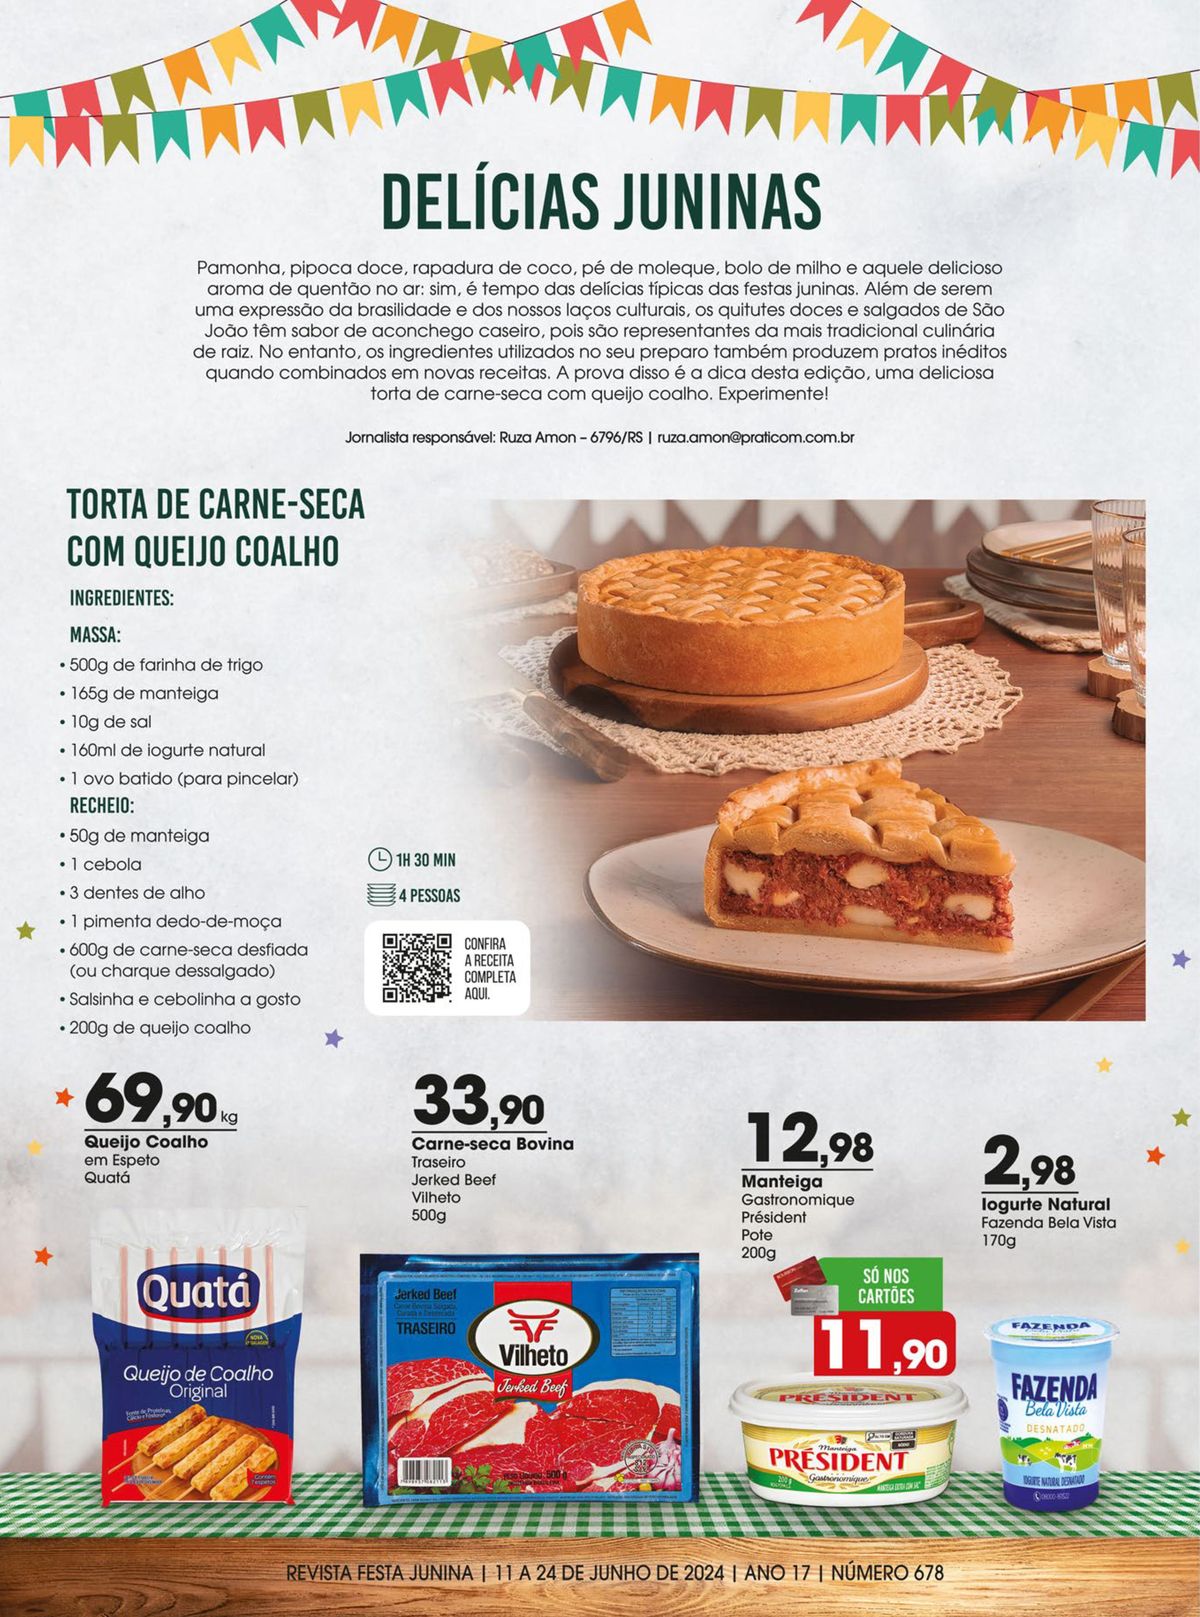 Delícias Juninas: Torta de Carne-Seca com Queijo Coalho